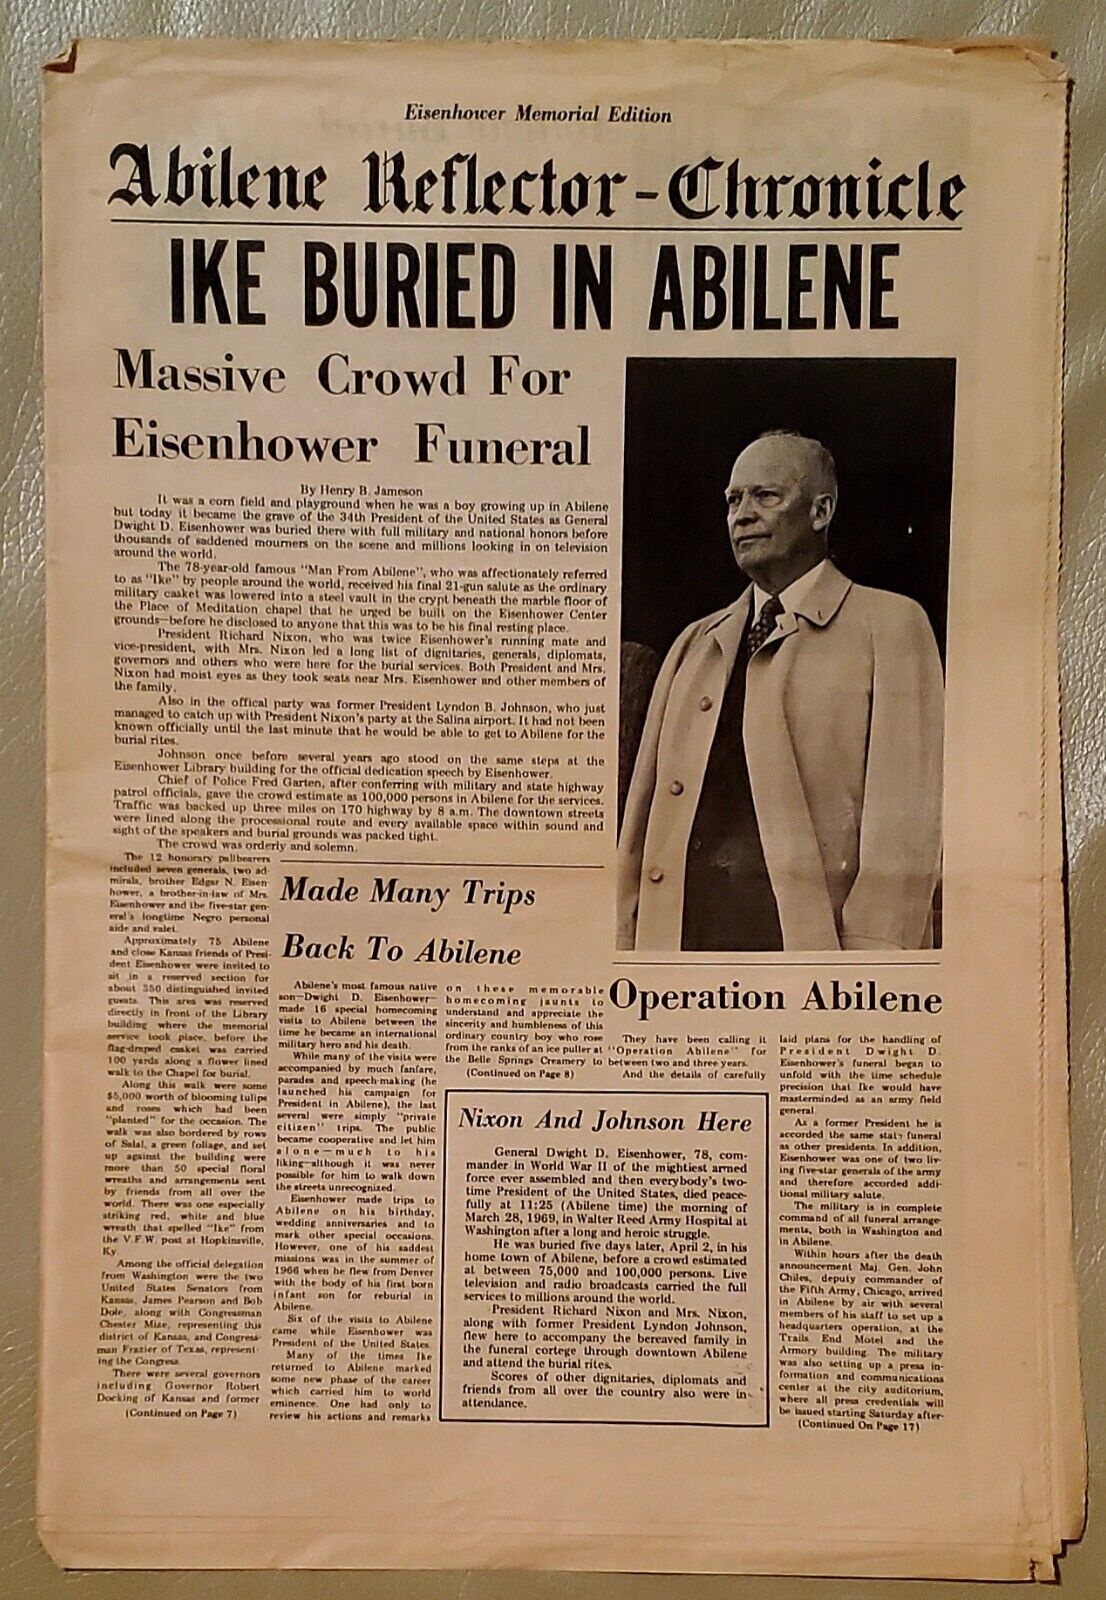 1969 President Eisenhower's Funeral - Abilene Reflector Chronicle